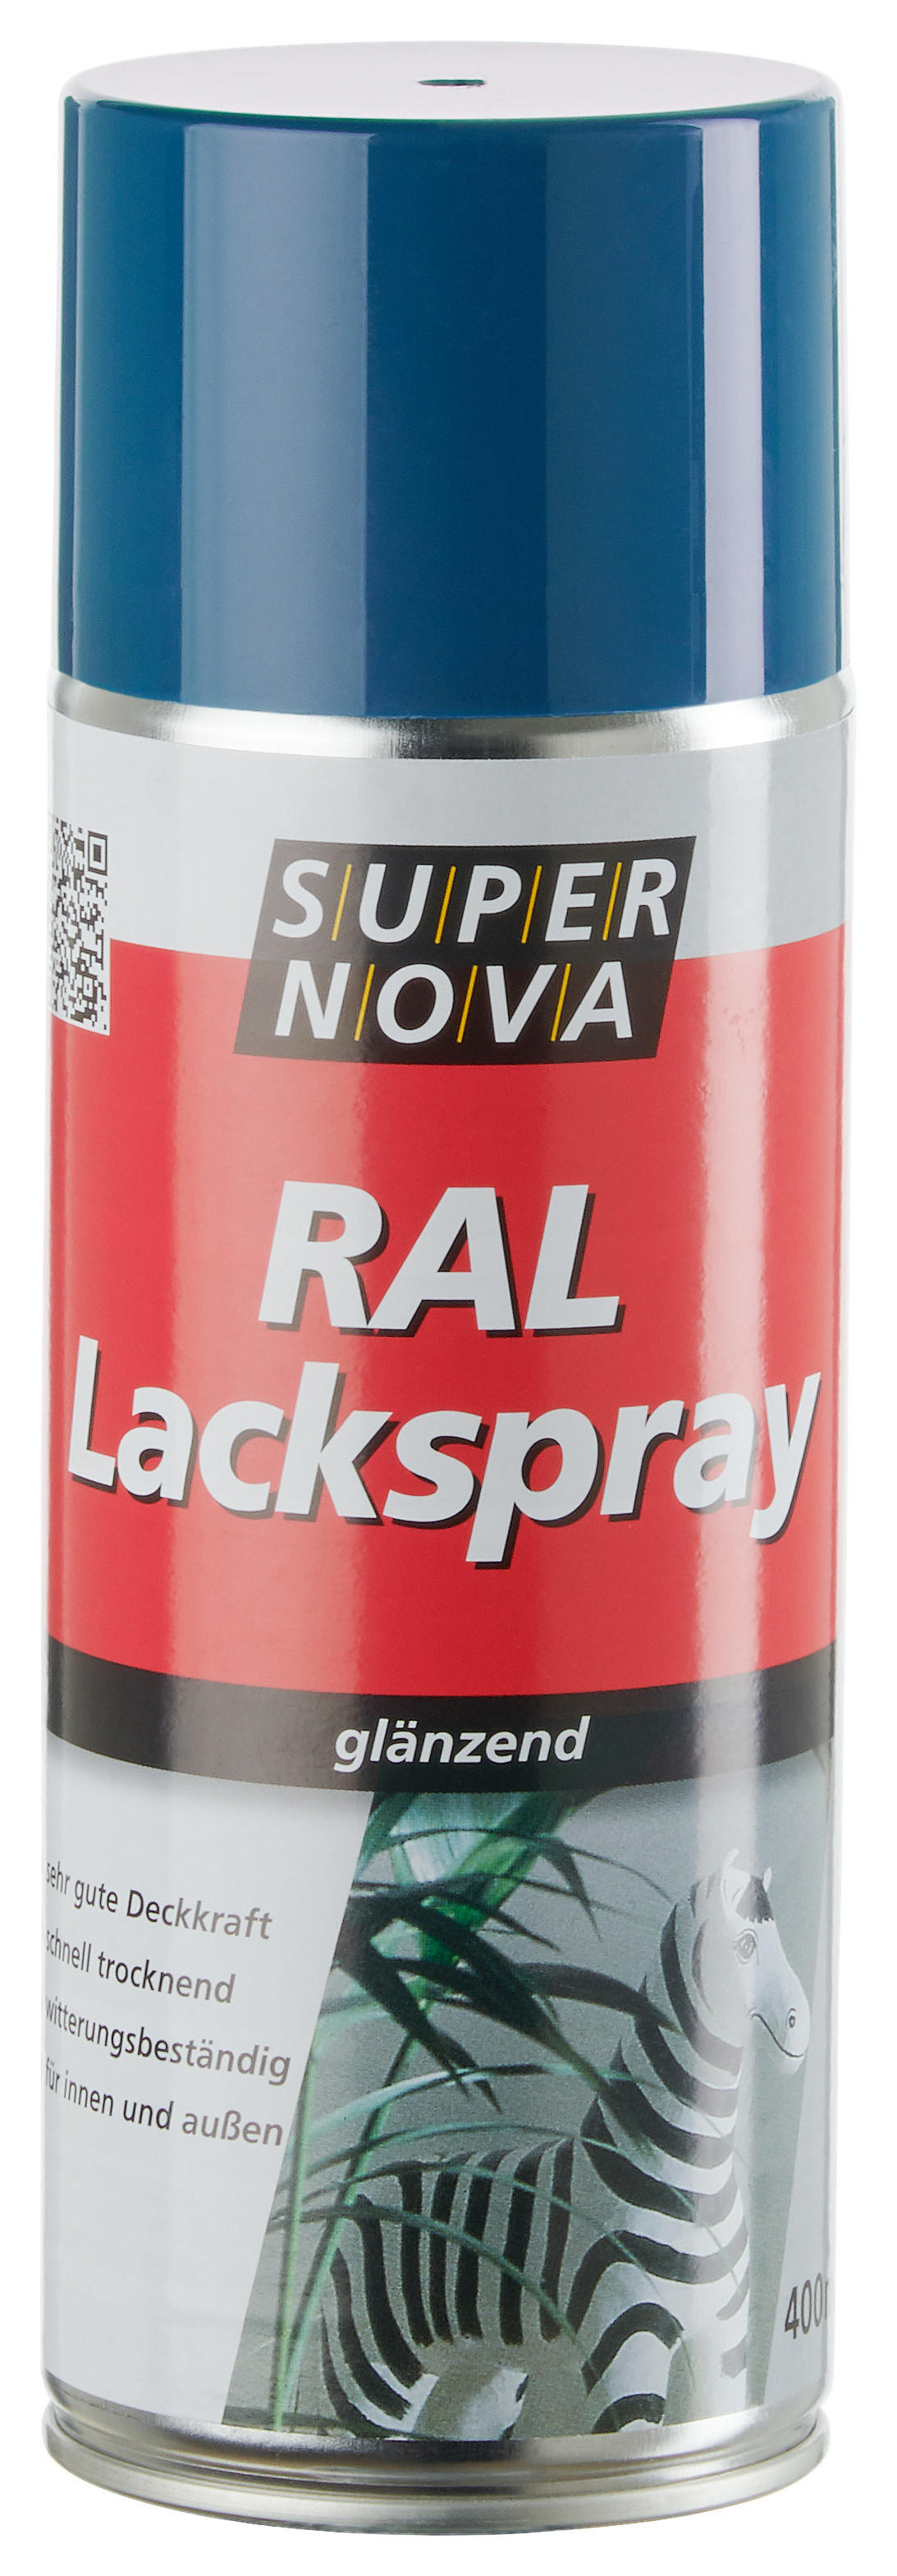 Super-Nova Lackspray enzianblau glänzend ca. 0,4 l Lackspray 400ml - enzianblau (400ml)